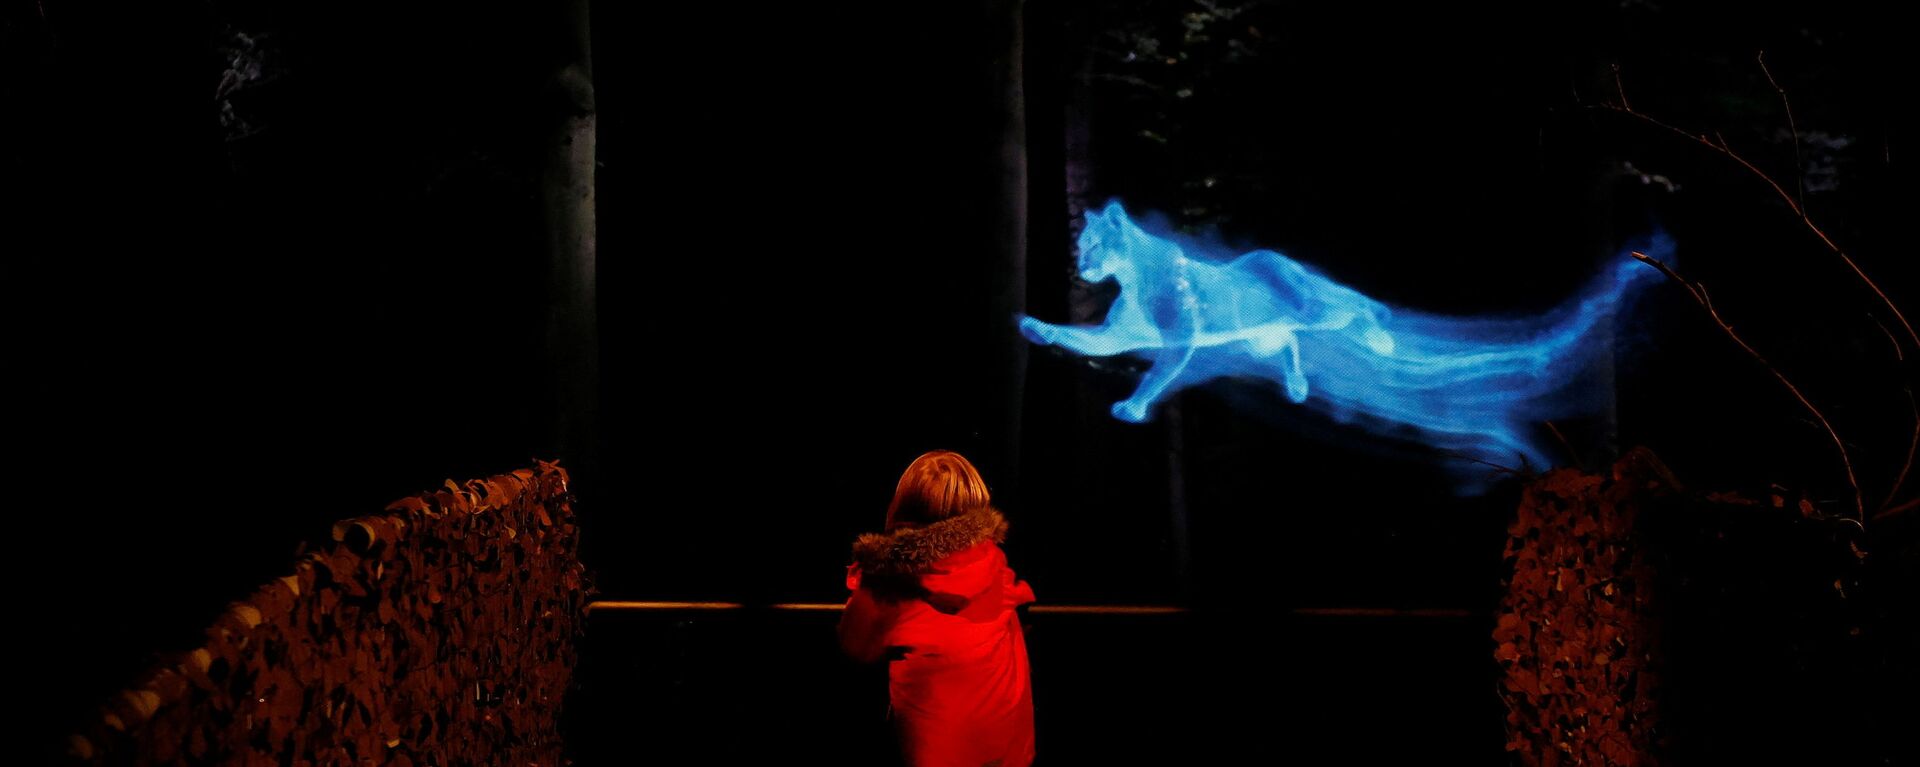 Ребенок в «Запретном лесу Гарри Поттера» в Арли-холле, Великобритания - Sputnik Казахстан, 1920, 31.10.2021